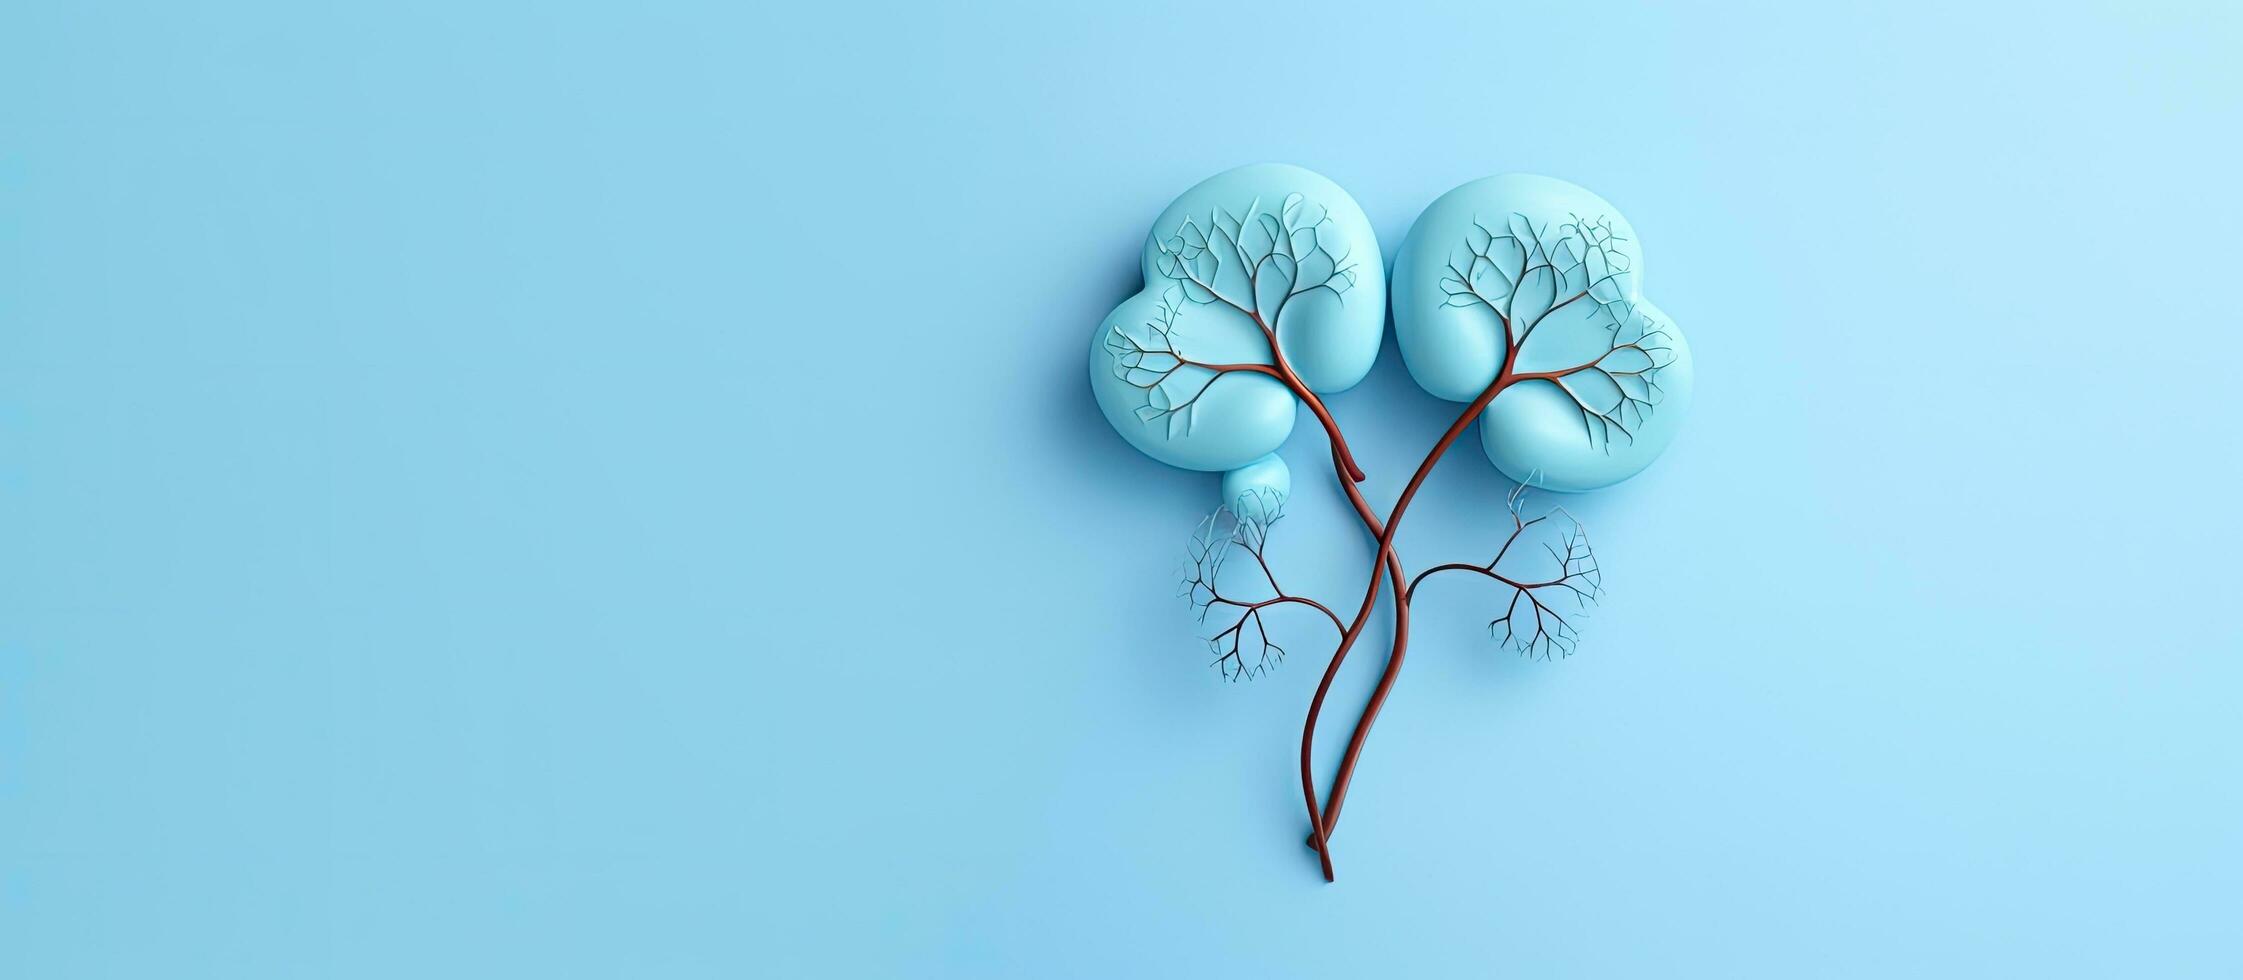 en dekorativ modell av mänsklig njurar är placerad på en pastell blå bakgrund. de begrepp representerar foto